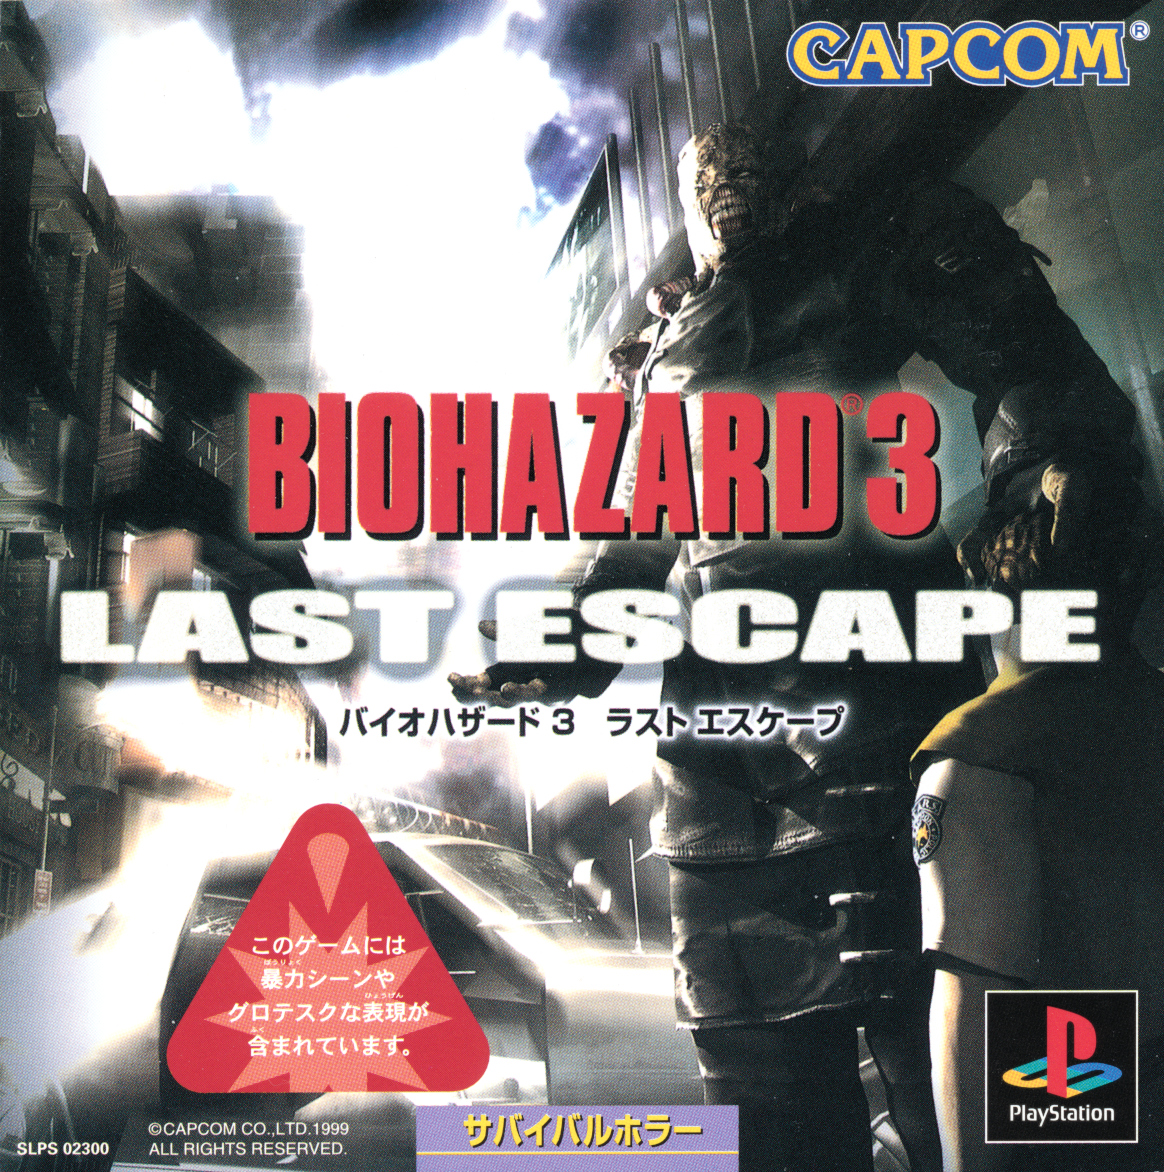 「バイオハザード3 LAST ESCAPE」の攻略サイト・Wikiまとめ【Biohazard 3】